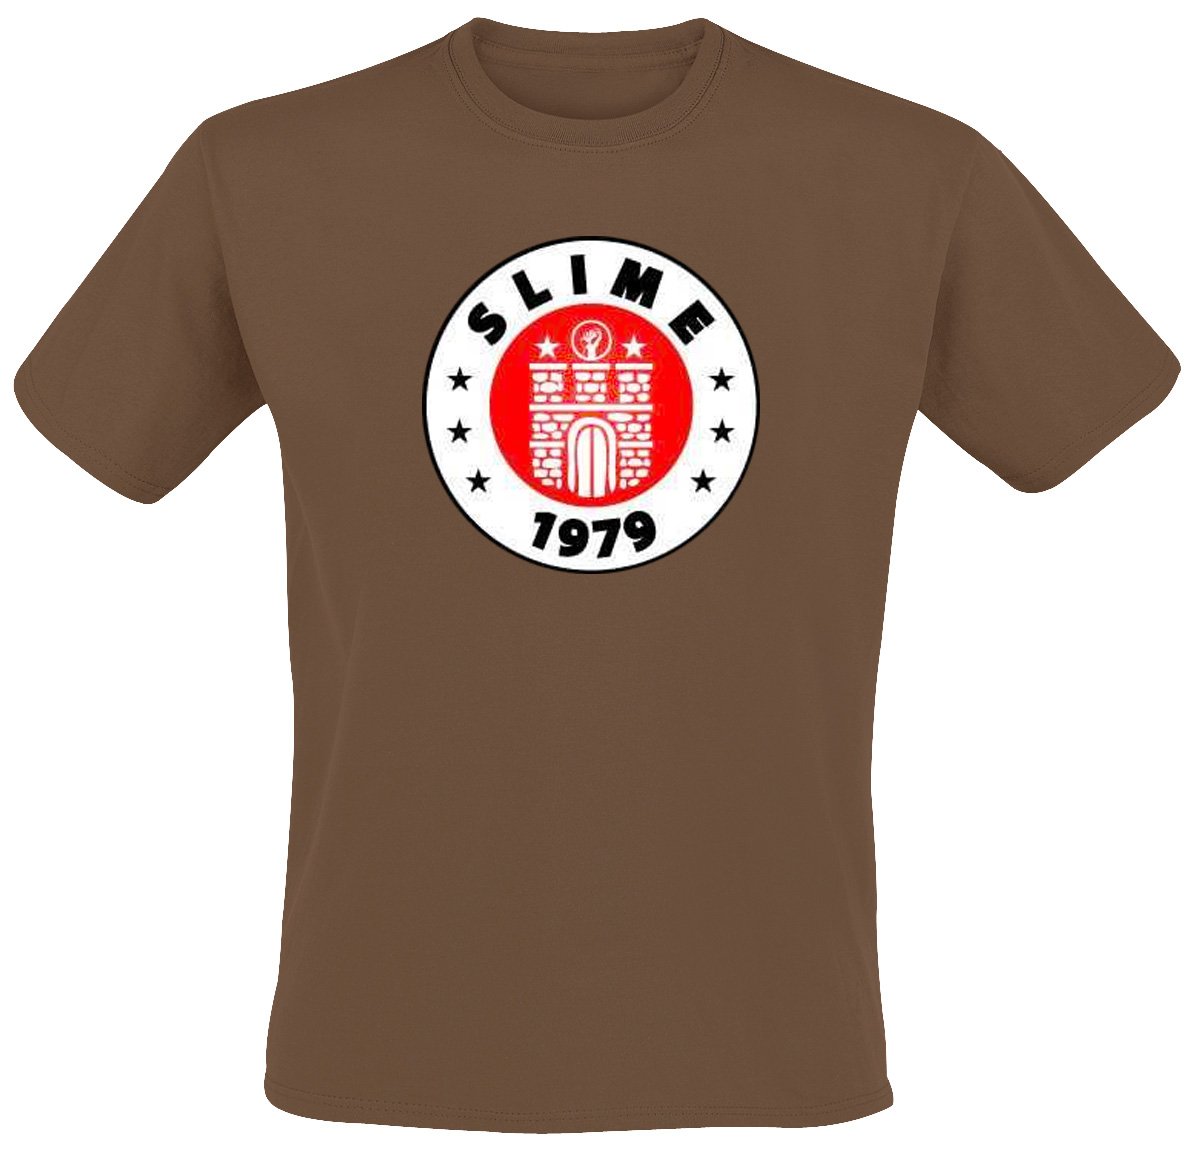 Slime - St. Pauli T-Shirt, braun, Grösse S